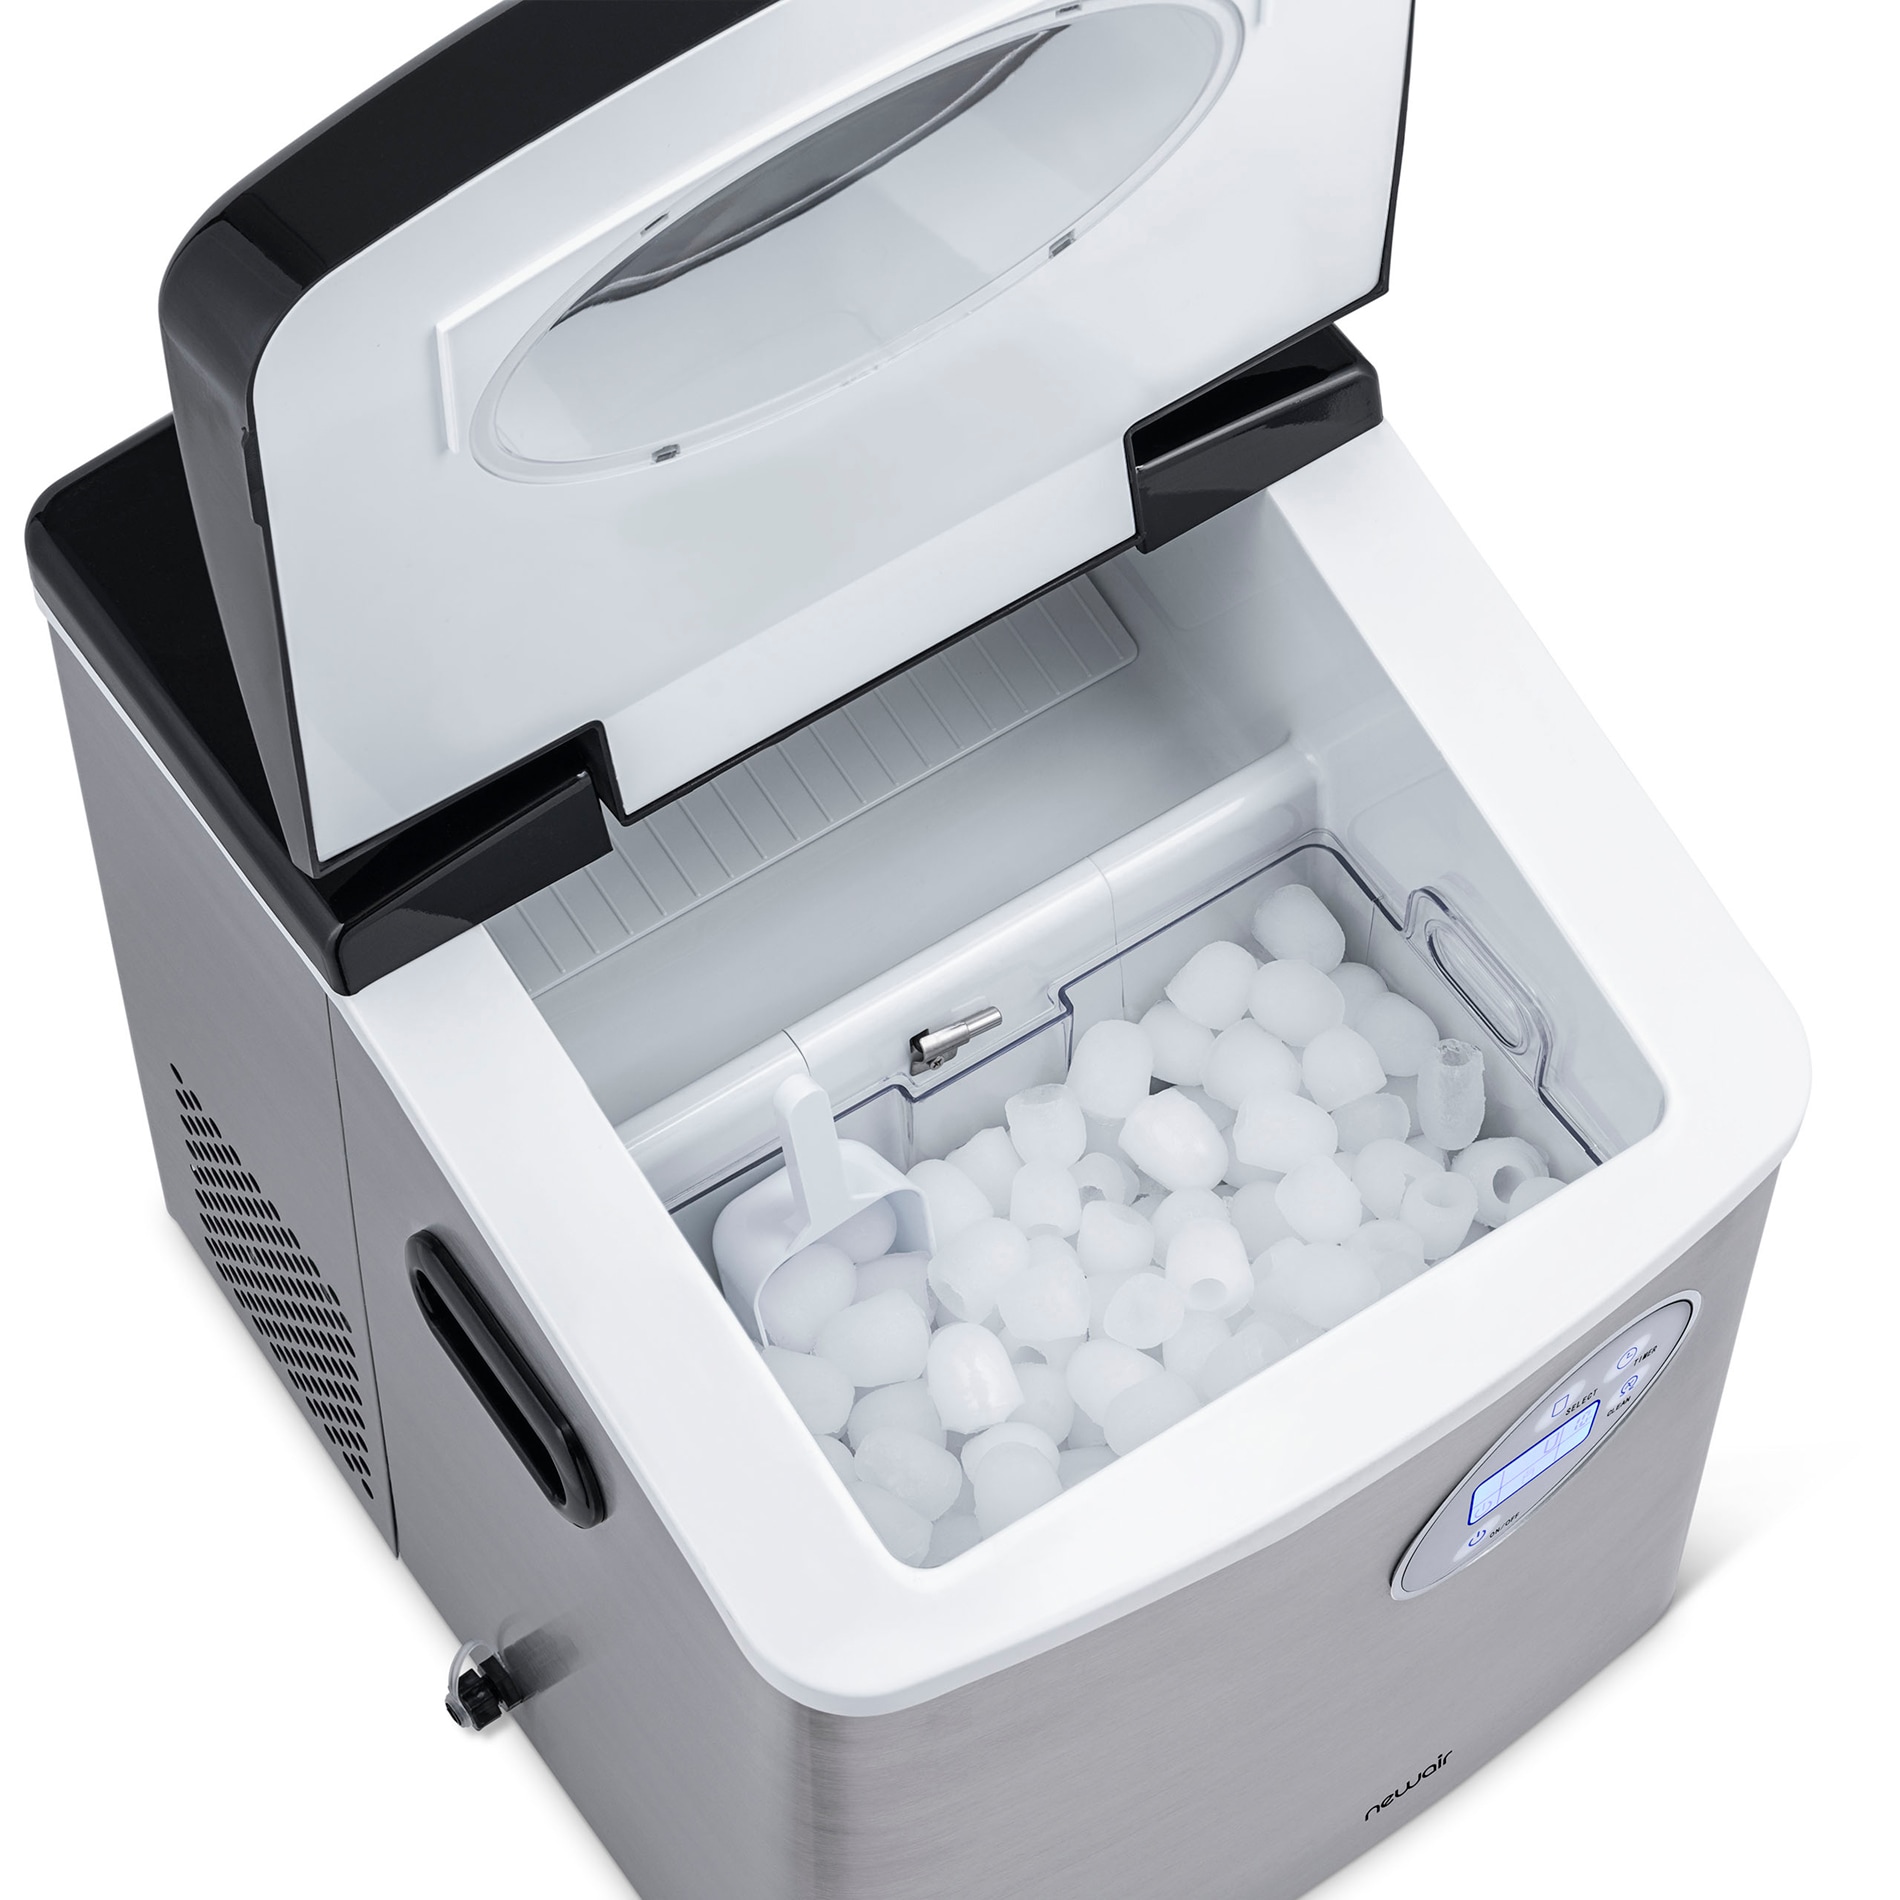 Newair, 50 lb. Portable Ice Maker, Countertop Design, 3 Bullet Ice